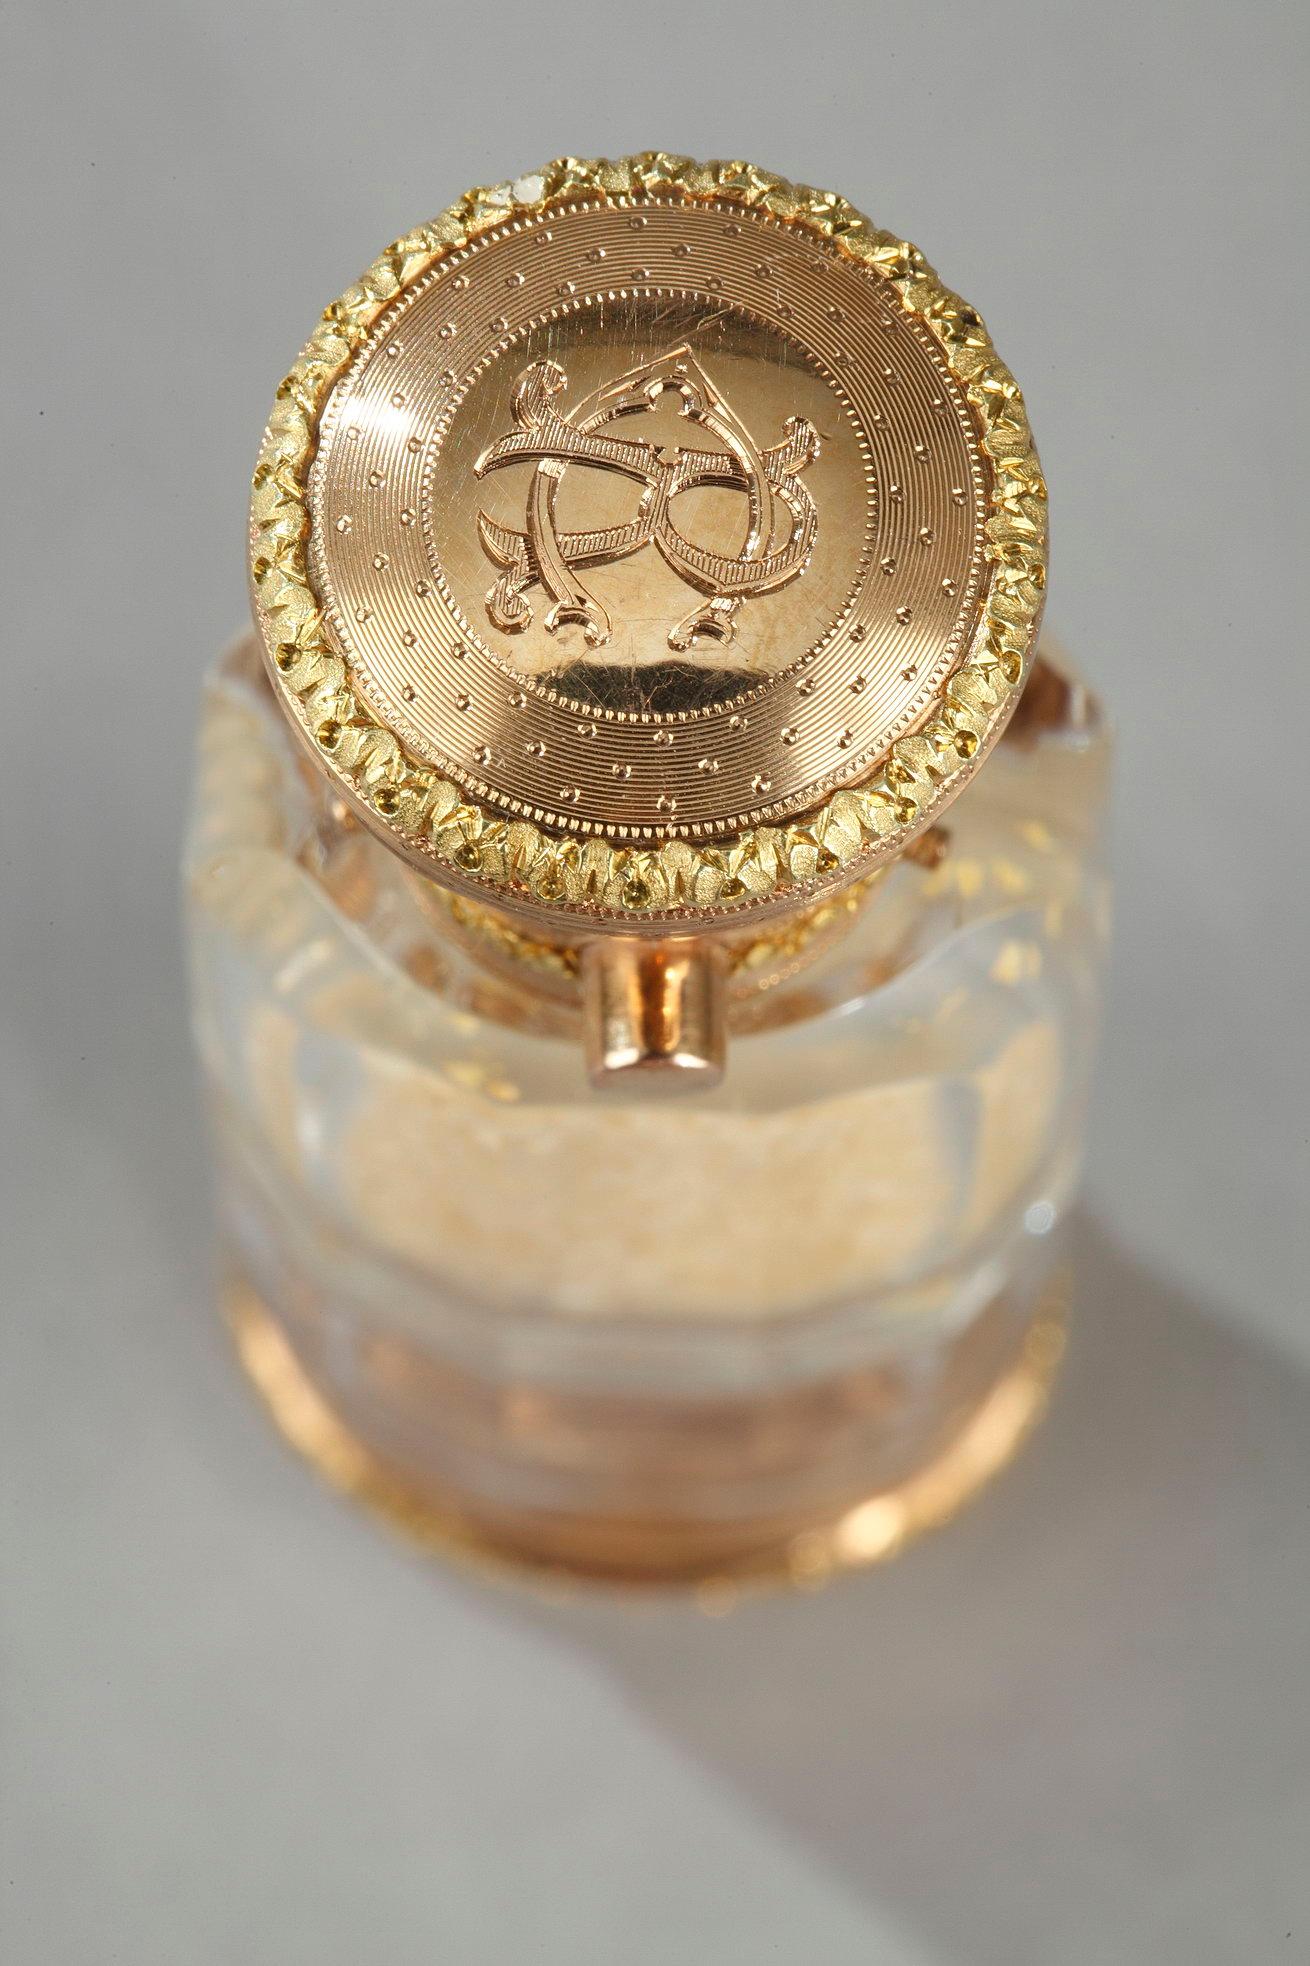 Flacon de parfum en cristal transparent, cylindrique, à deux extrémités, dont l'une des faces est en verre  une vinaigrette fine et l'autre un compartiment de sel odorant. La vinaigrette ouvre une grille percée contenant encore son éponge imbibée de